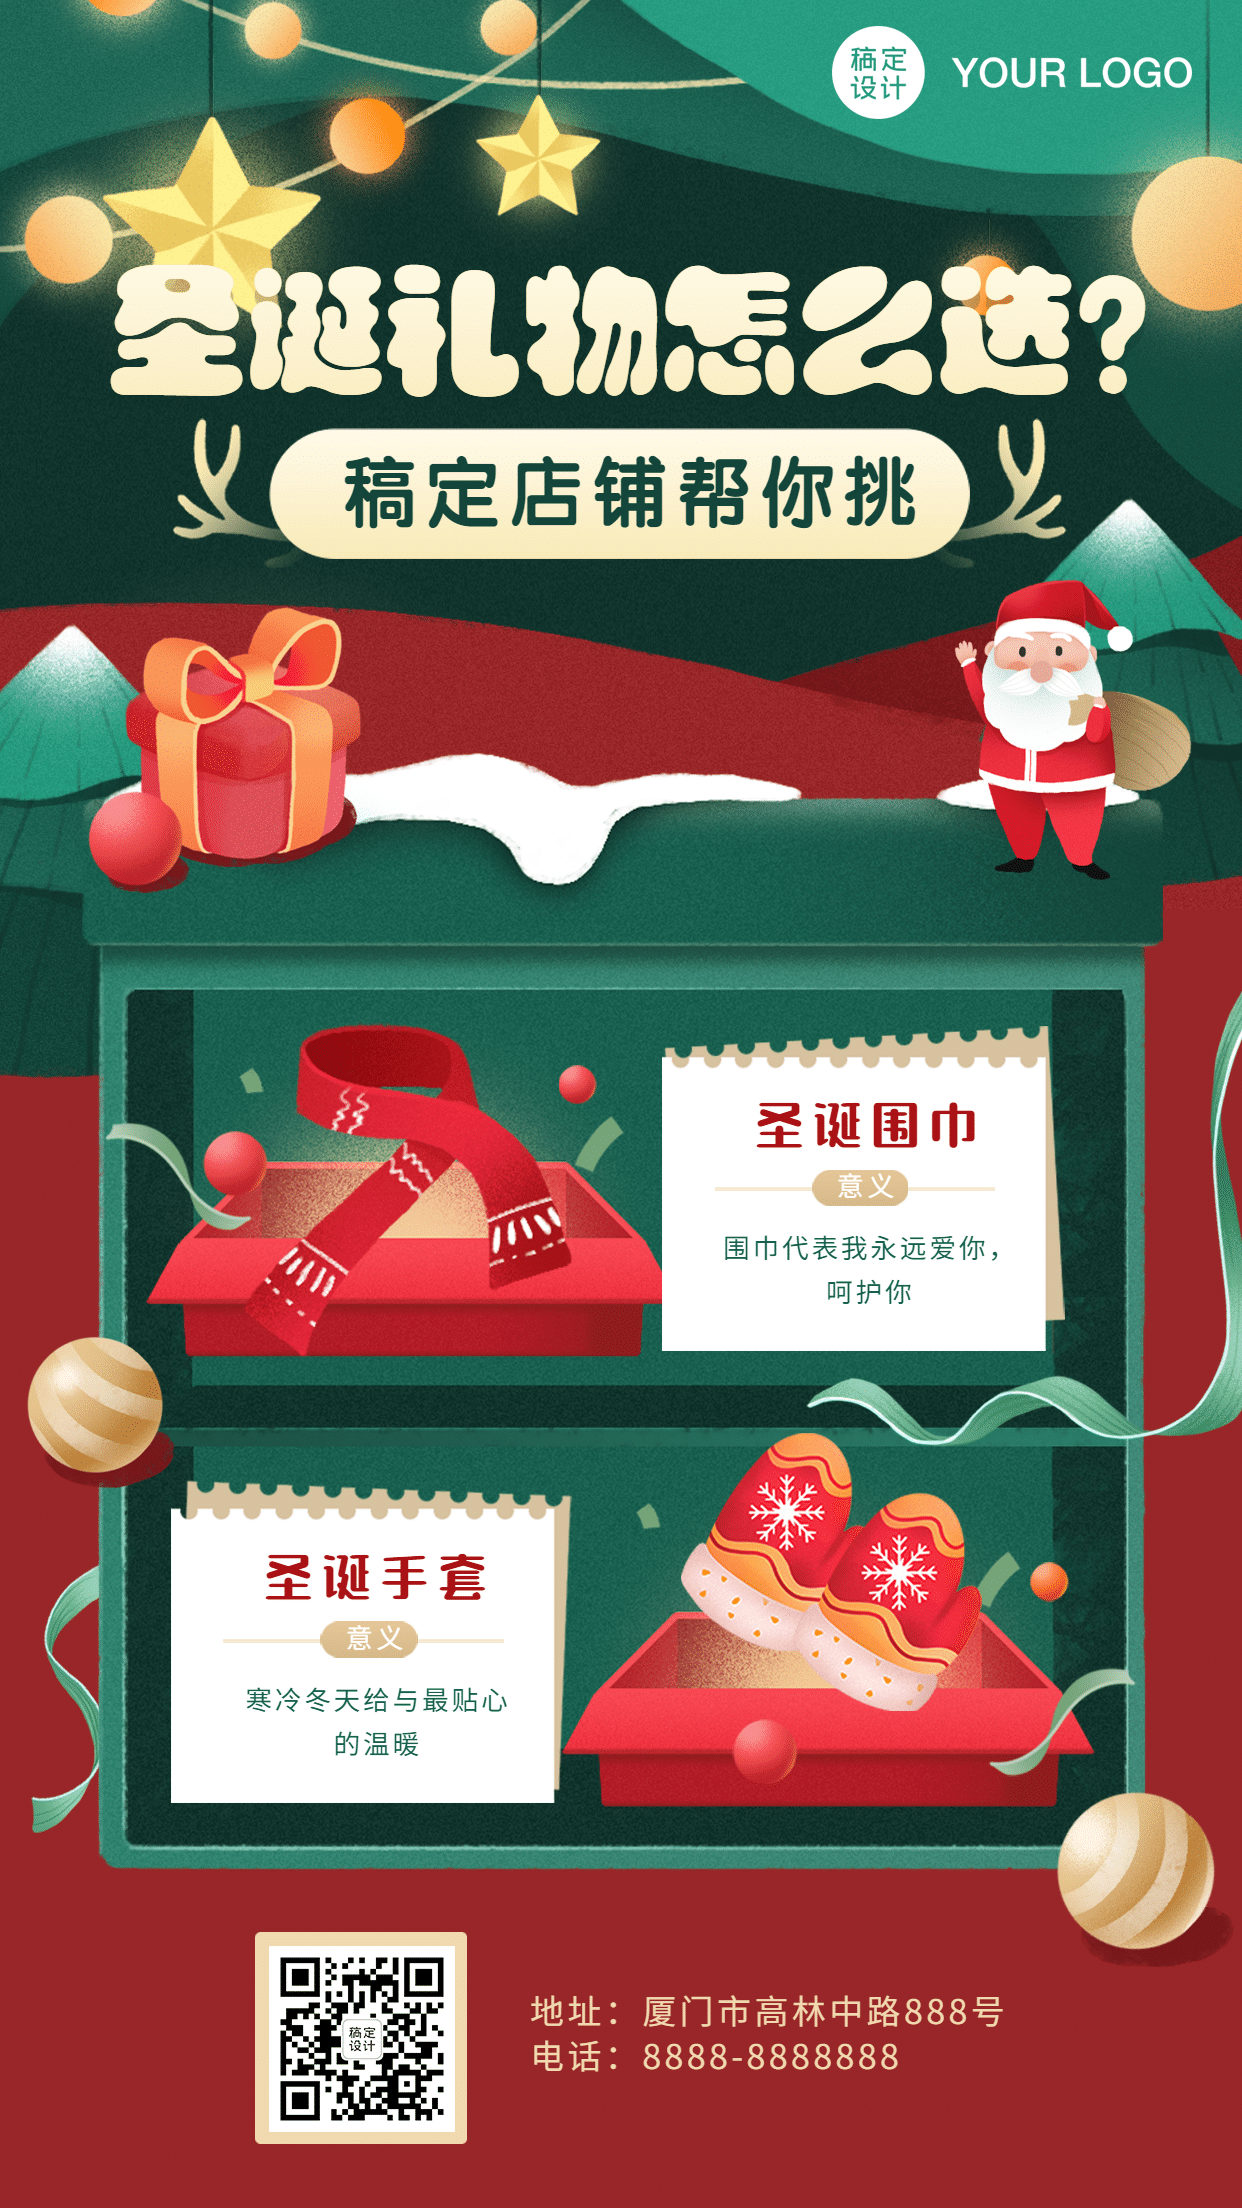 圣诞节快乐活动产品展示手机海报预览效果